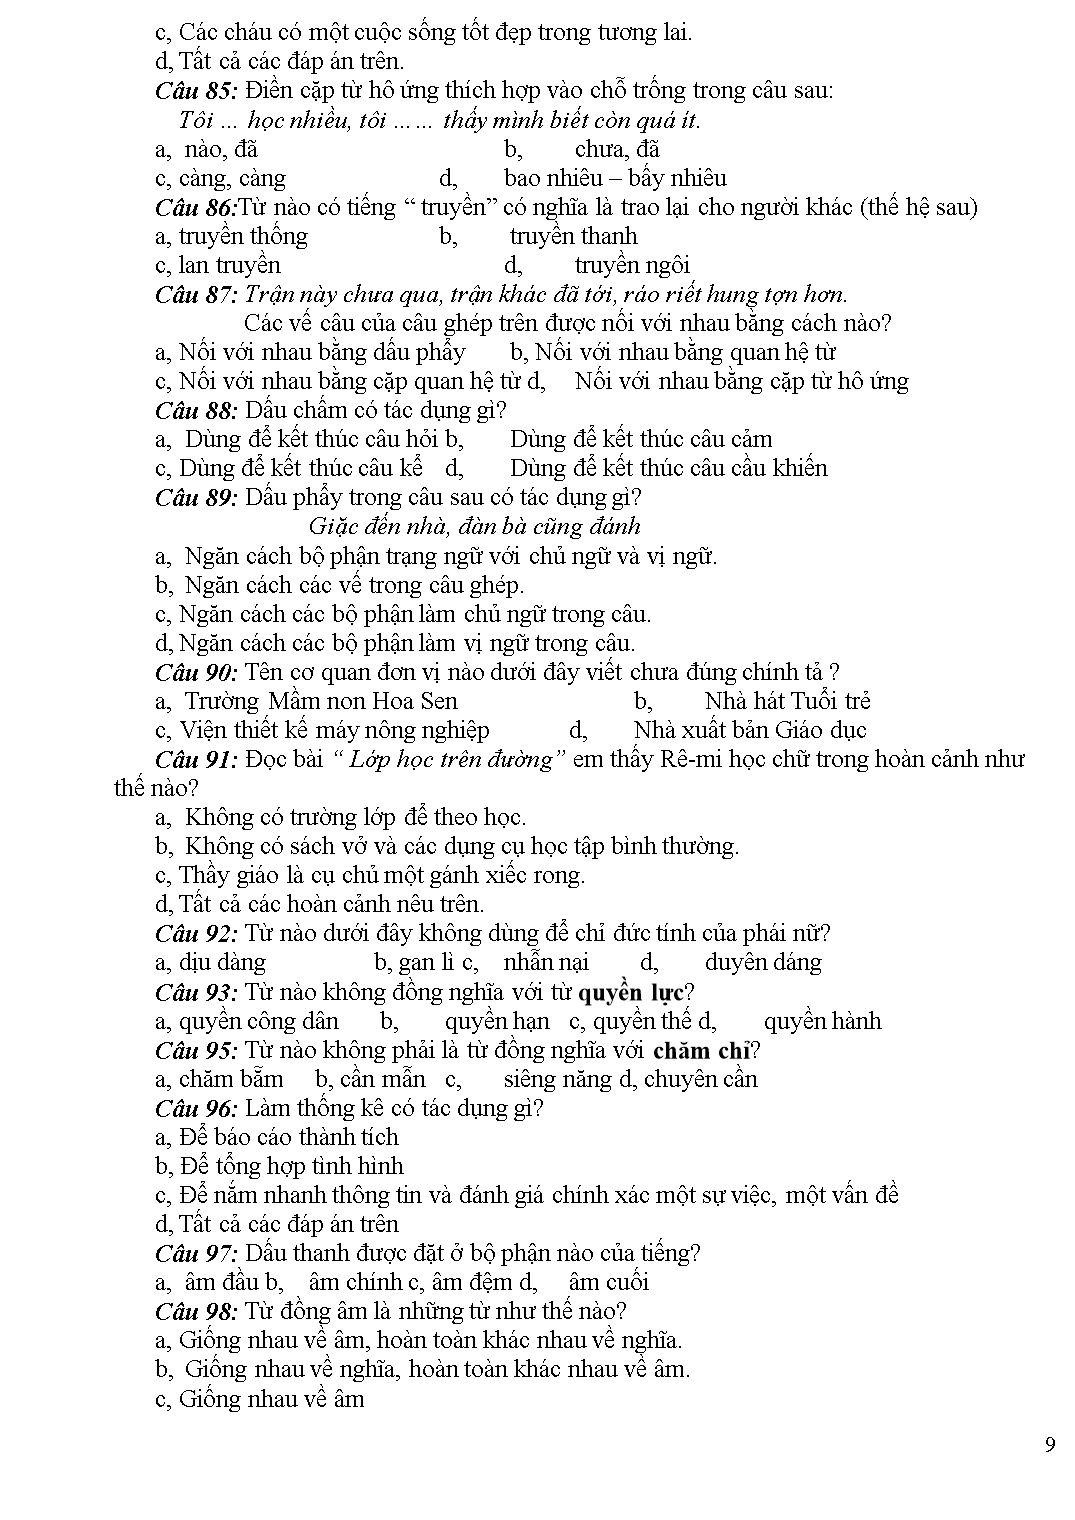 100 câu trắc nghiệm môn Tiếng Việt 5 trang 9